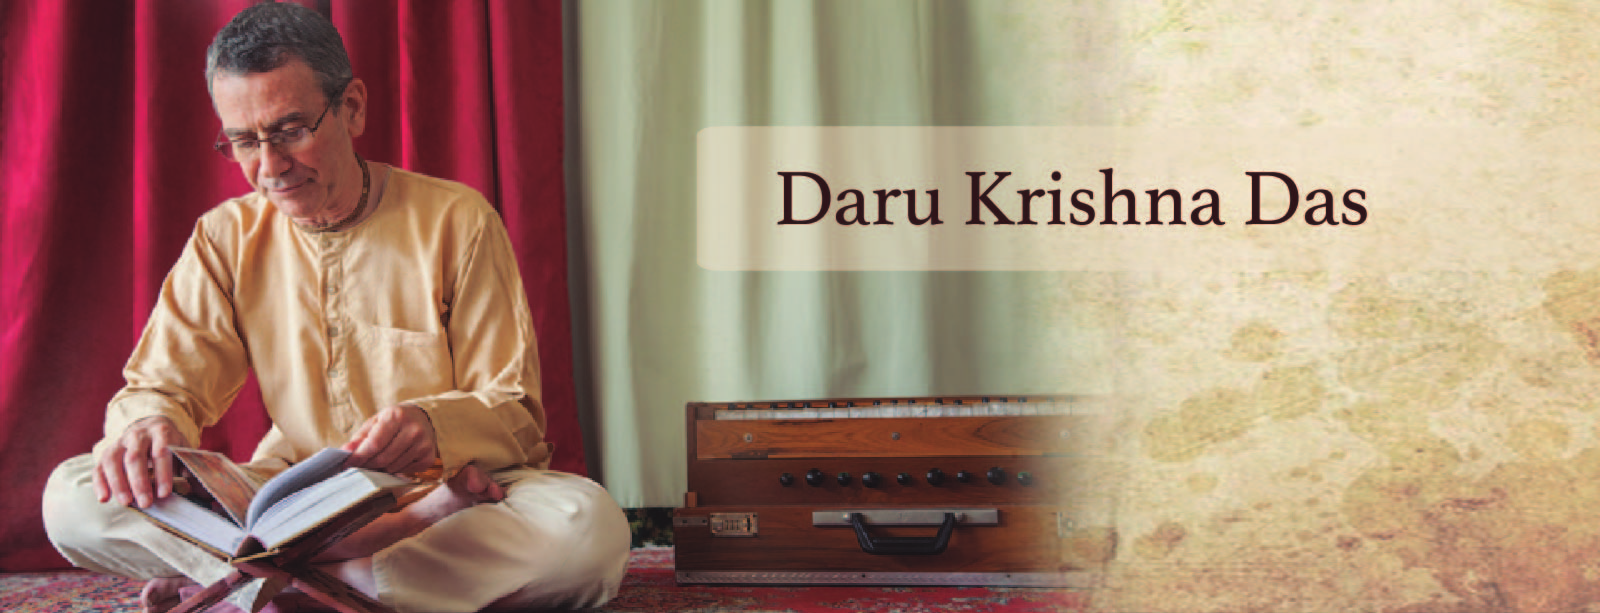 Profesor Daru Krishna Das - Ha estudiado y practicado Bhakti Yoga y diversas ciencias védicas desde 1976, y al mismo tiempo ha entrenado a decenas de estudiantes en estas disciplinas.